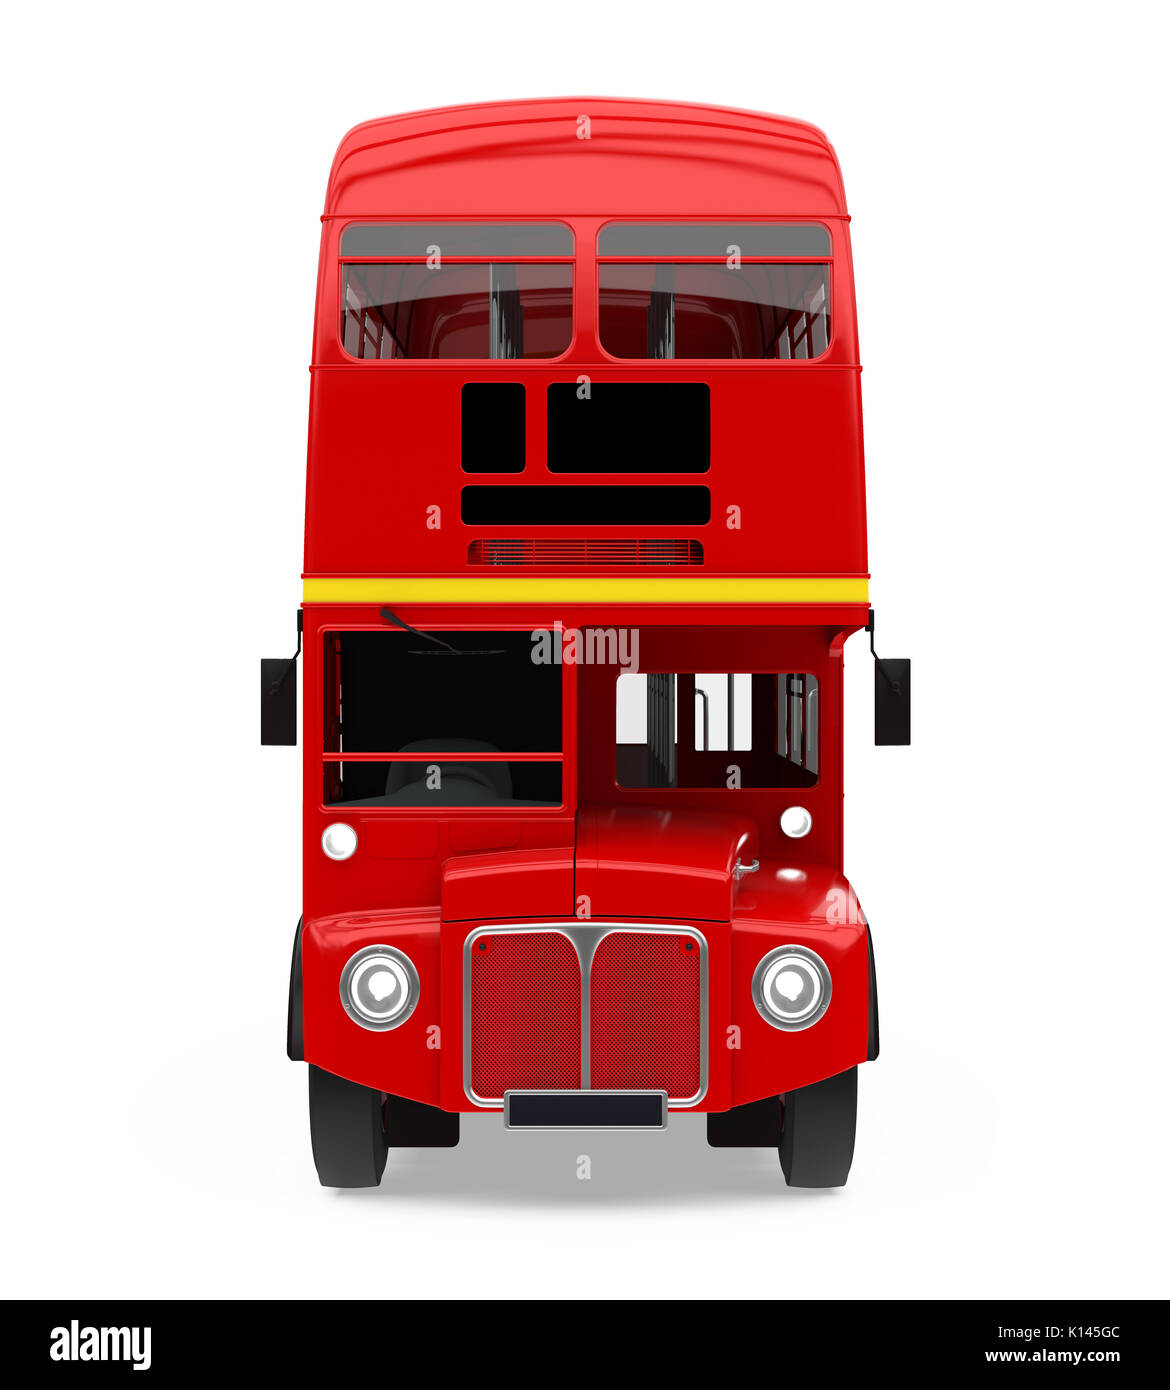 Bus à impériale rouge isolé Banque D'Images